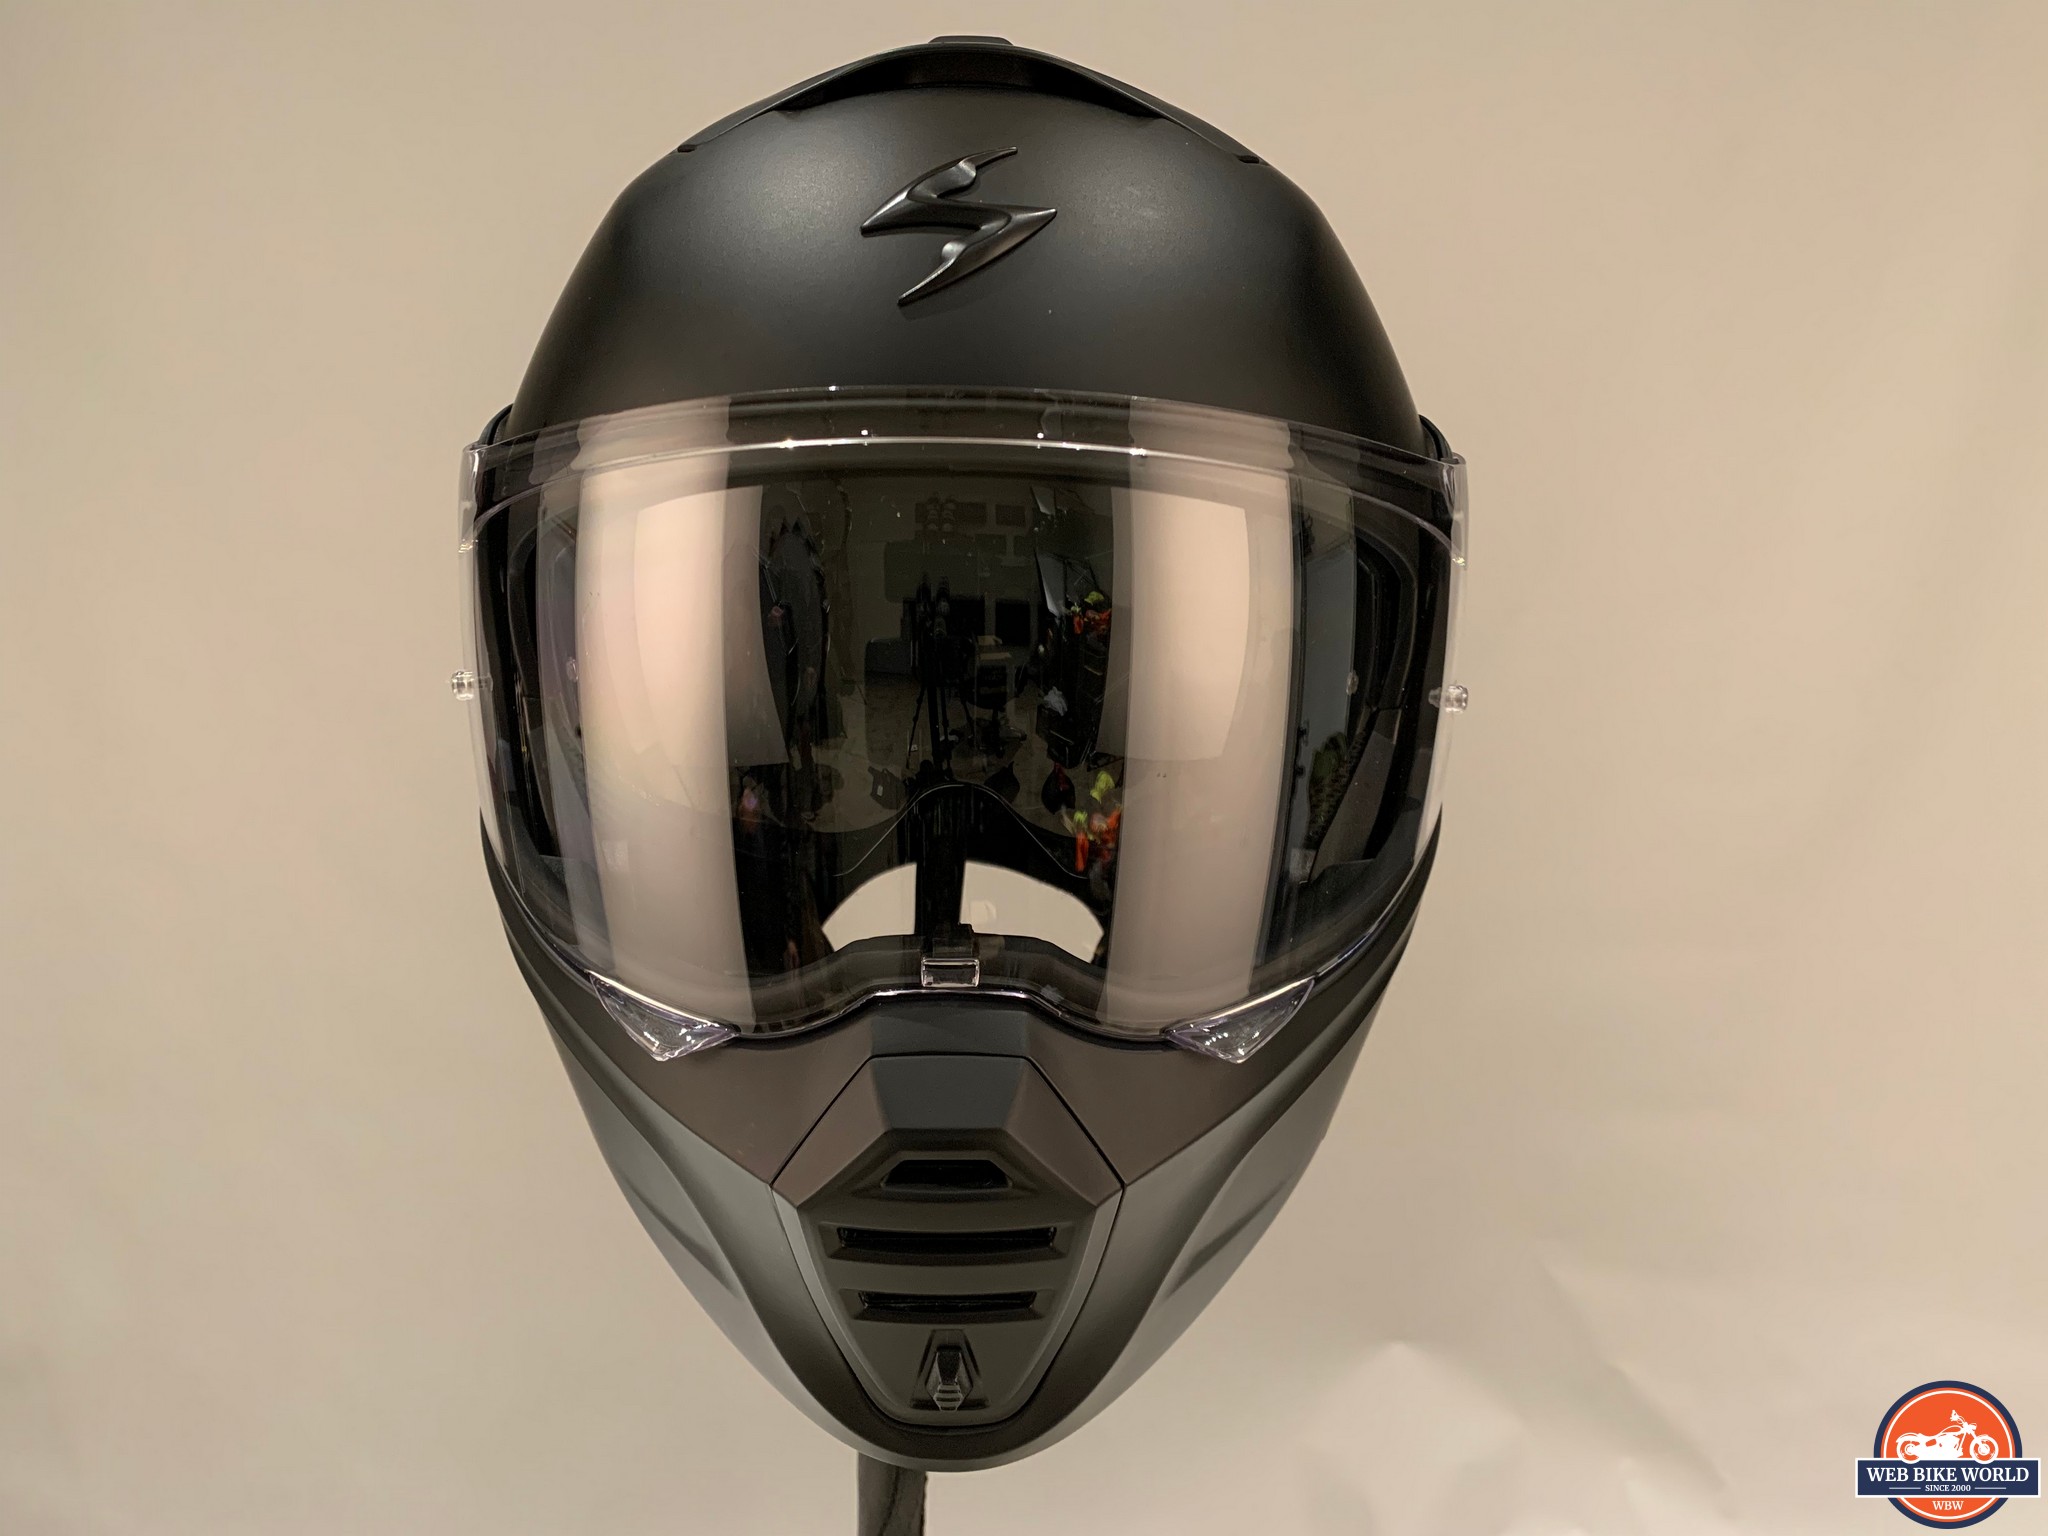 Front view of the EXO GT930 helmet